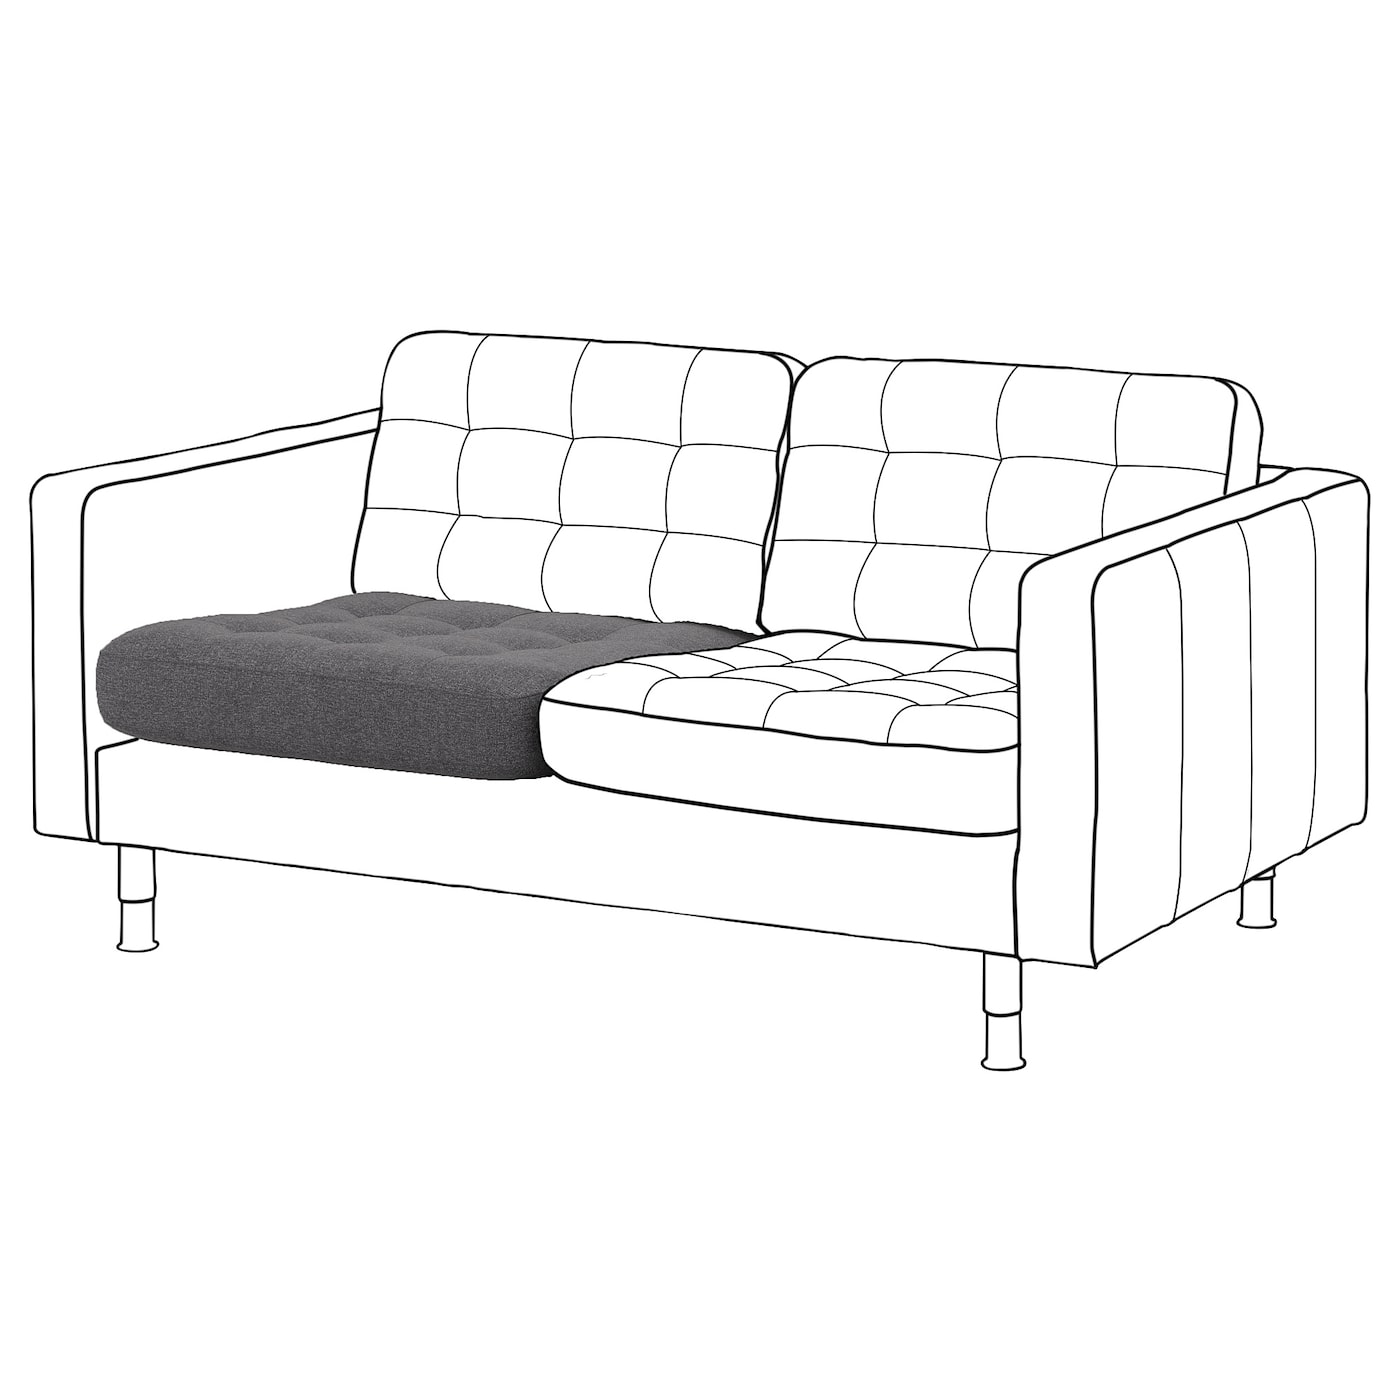 Подушка сиденья на диван - LANDSKRONA IKEA/ ЛАНДСКРУНА ИКЕА, 74х72х17 см, серый